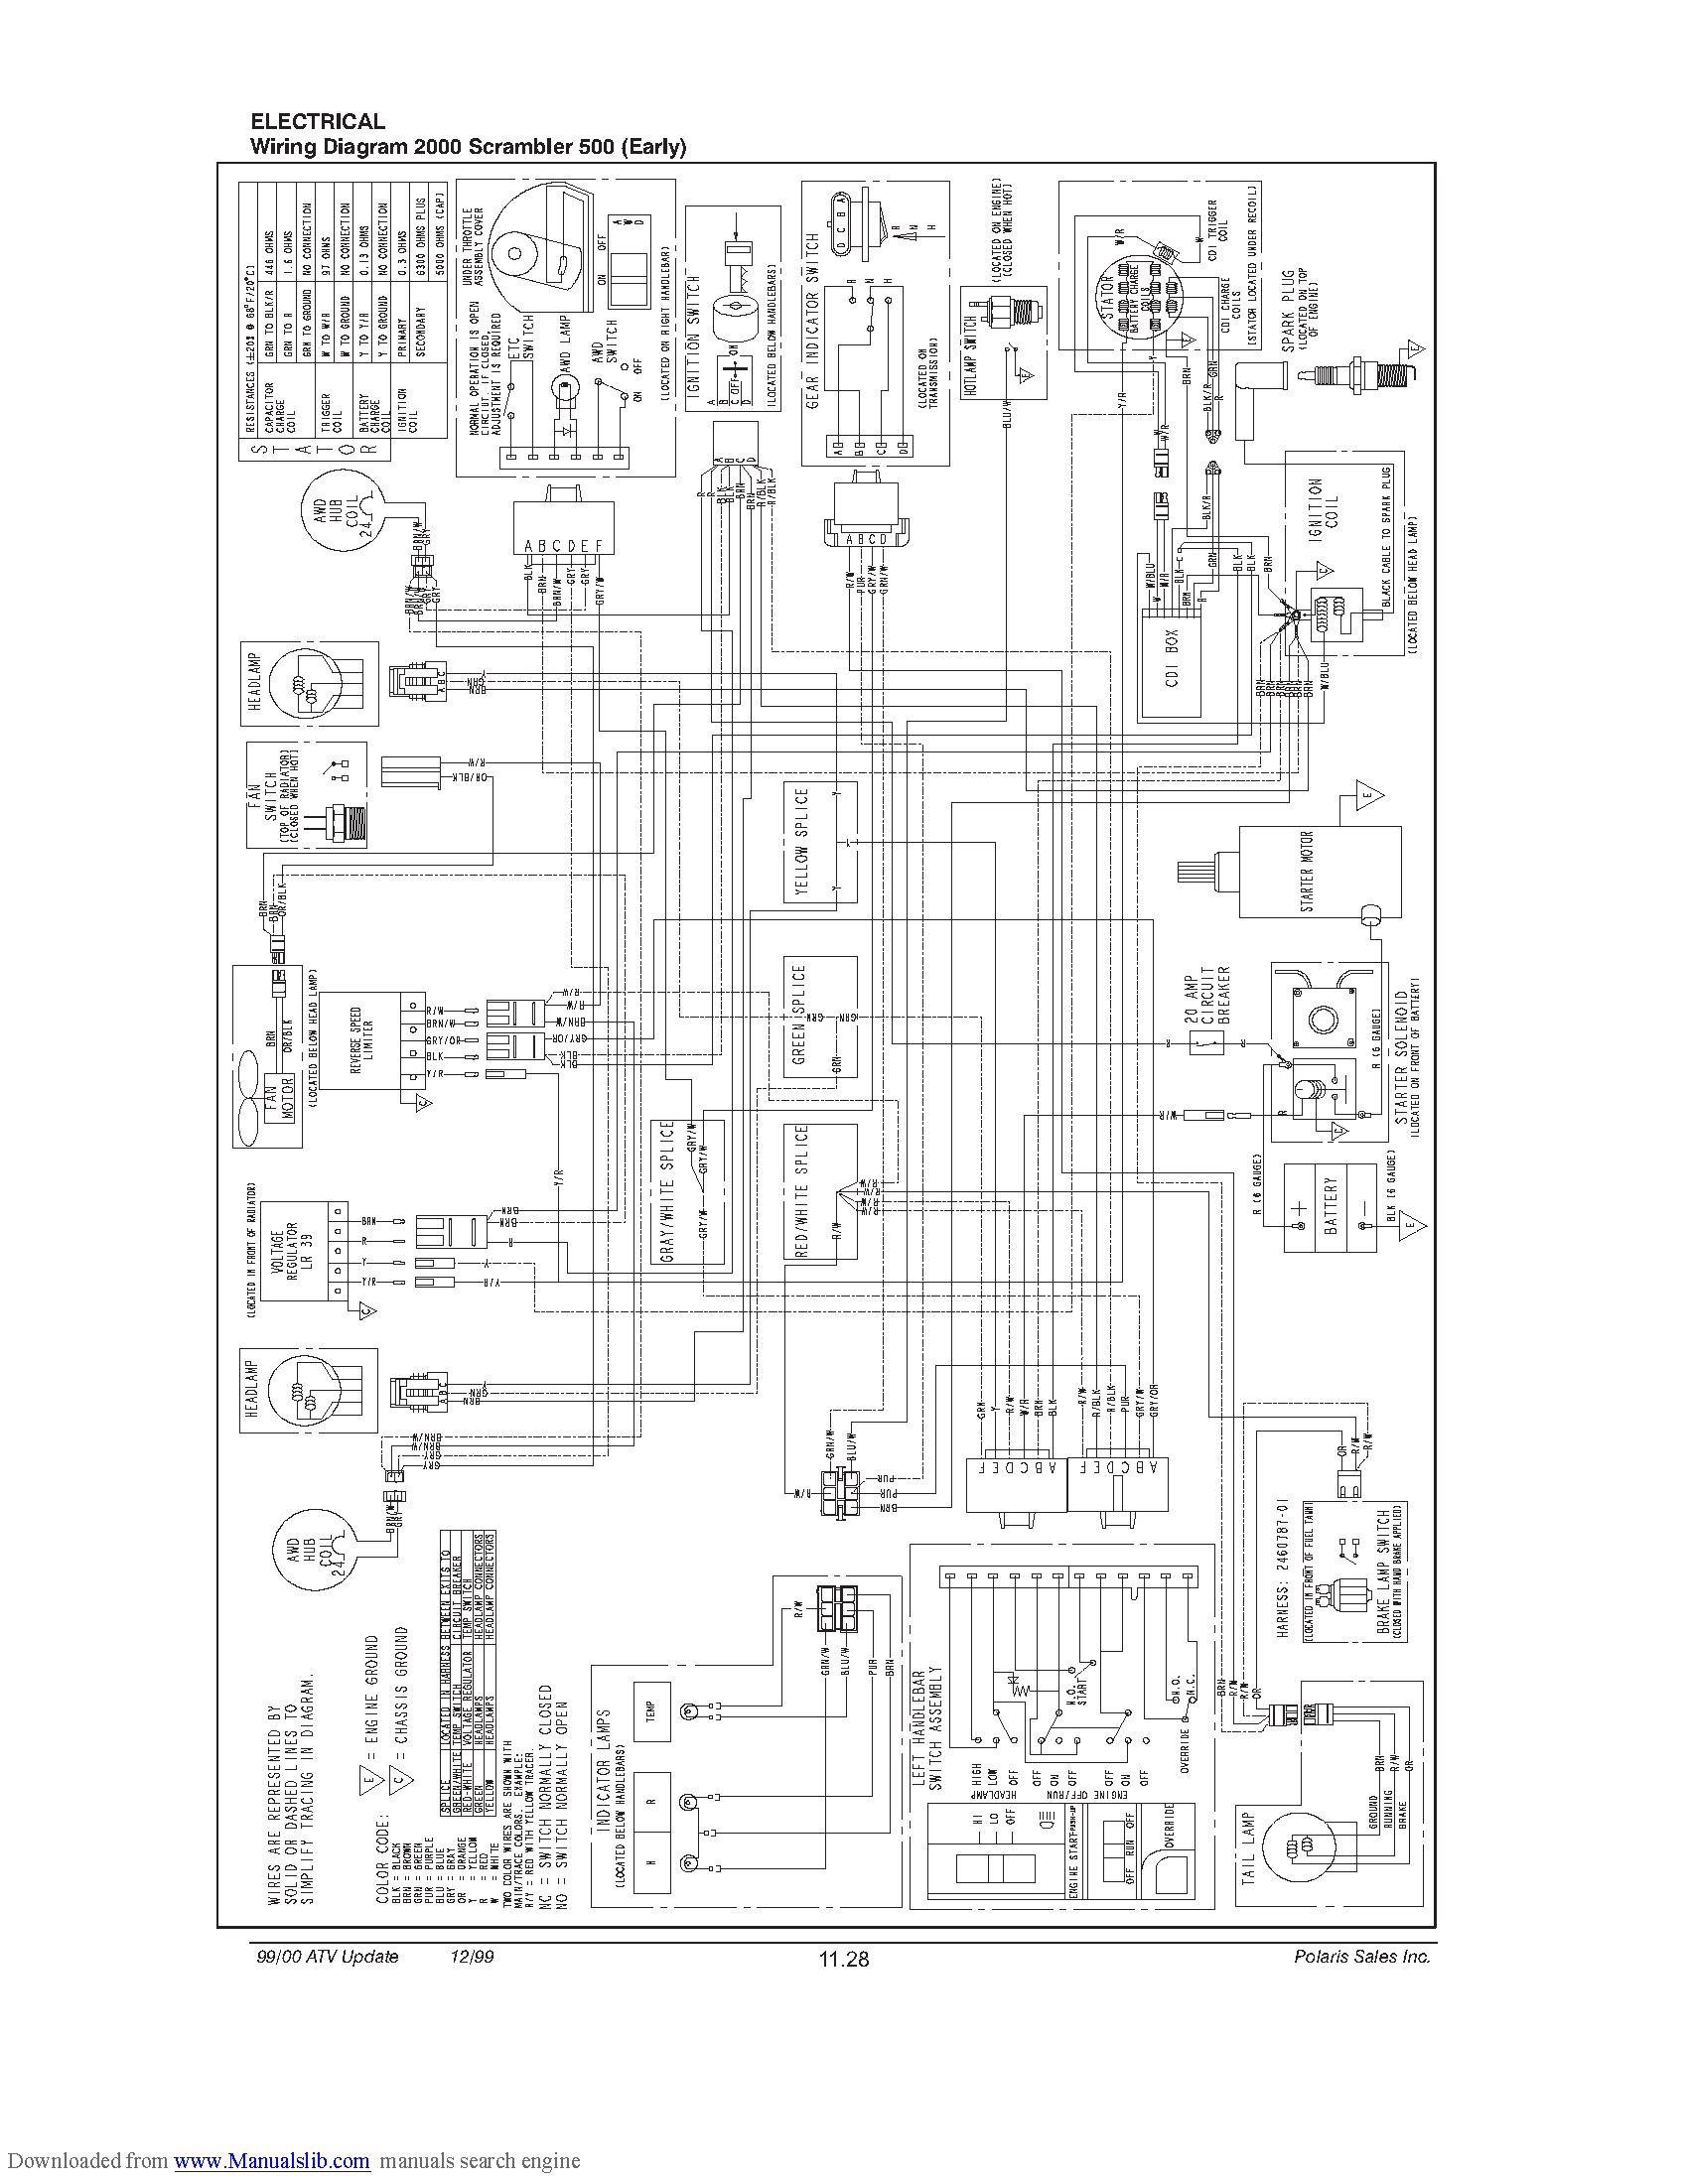 2001 Polaris Sportsman 90 Wiring Diagram | Wiring Library - Polaris Sportsman 500 Wiring Diagram Pdf